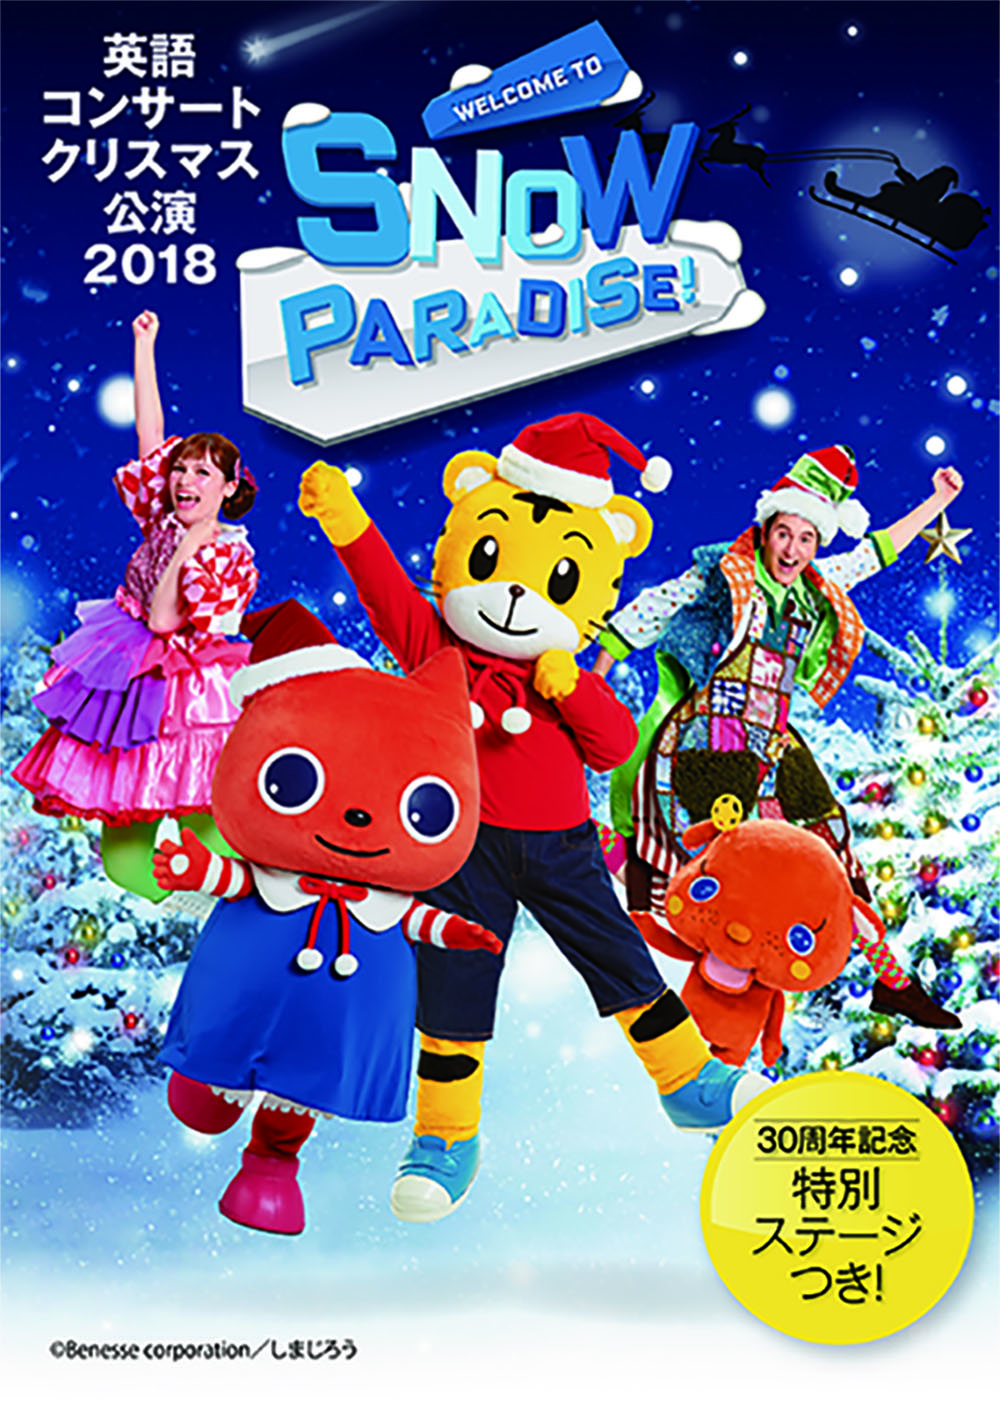 【共催】<br>ベネッセの英語コンサートクリスマス公演2018<br>WELCOME TO SNOW PARADISE!